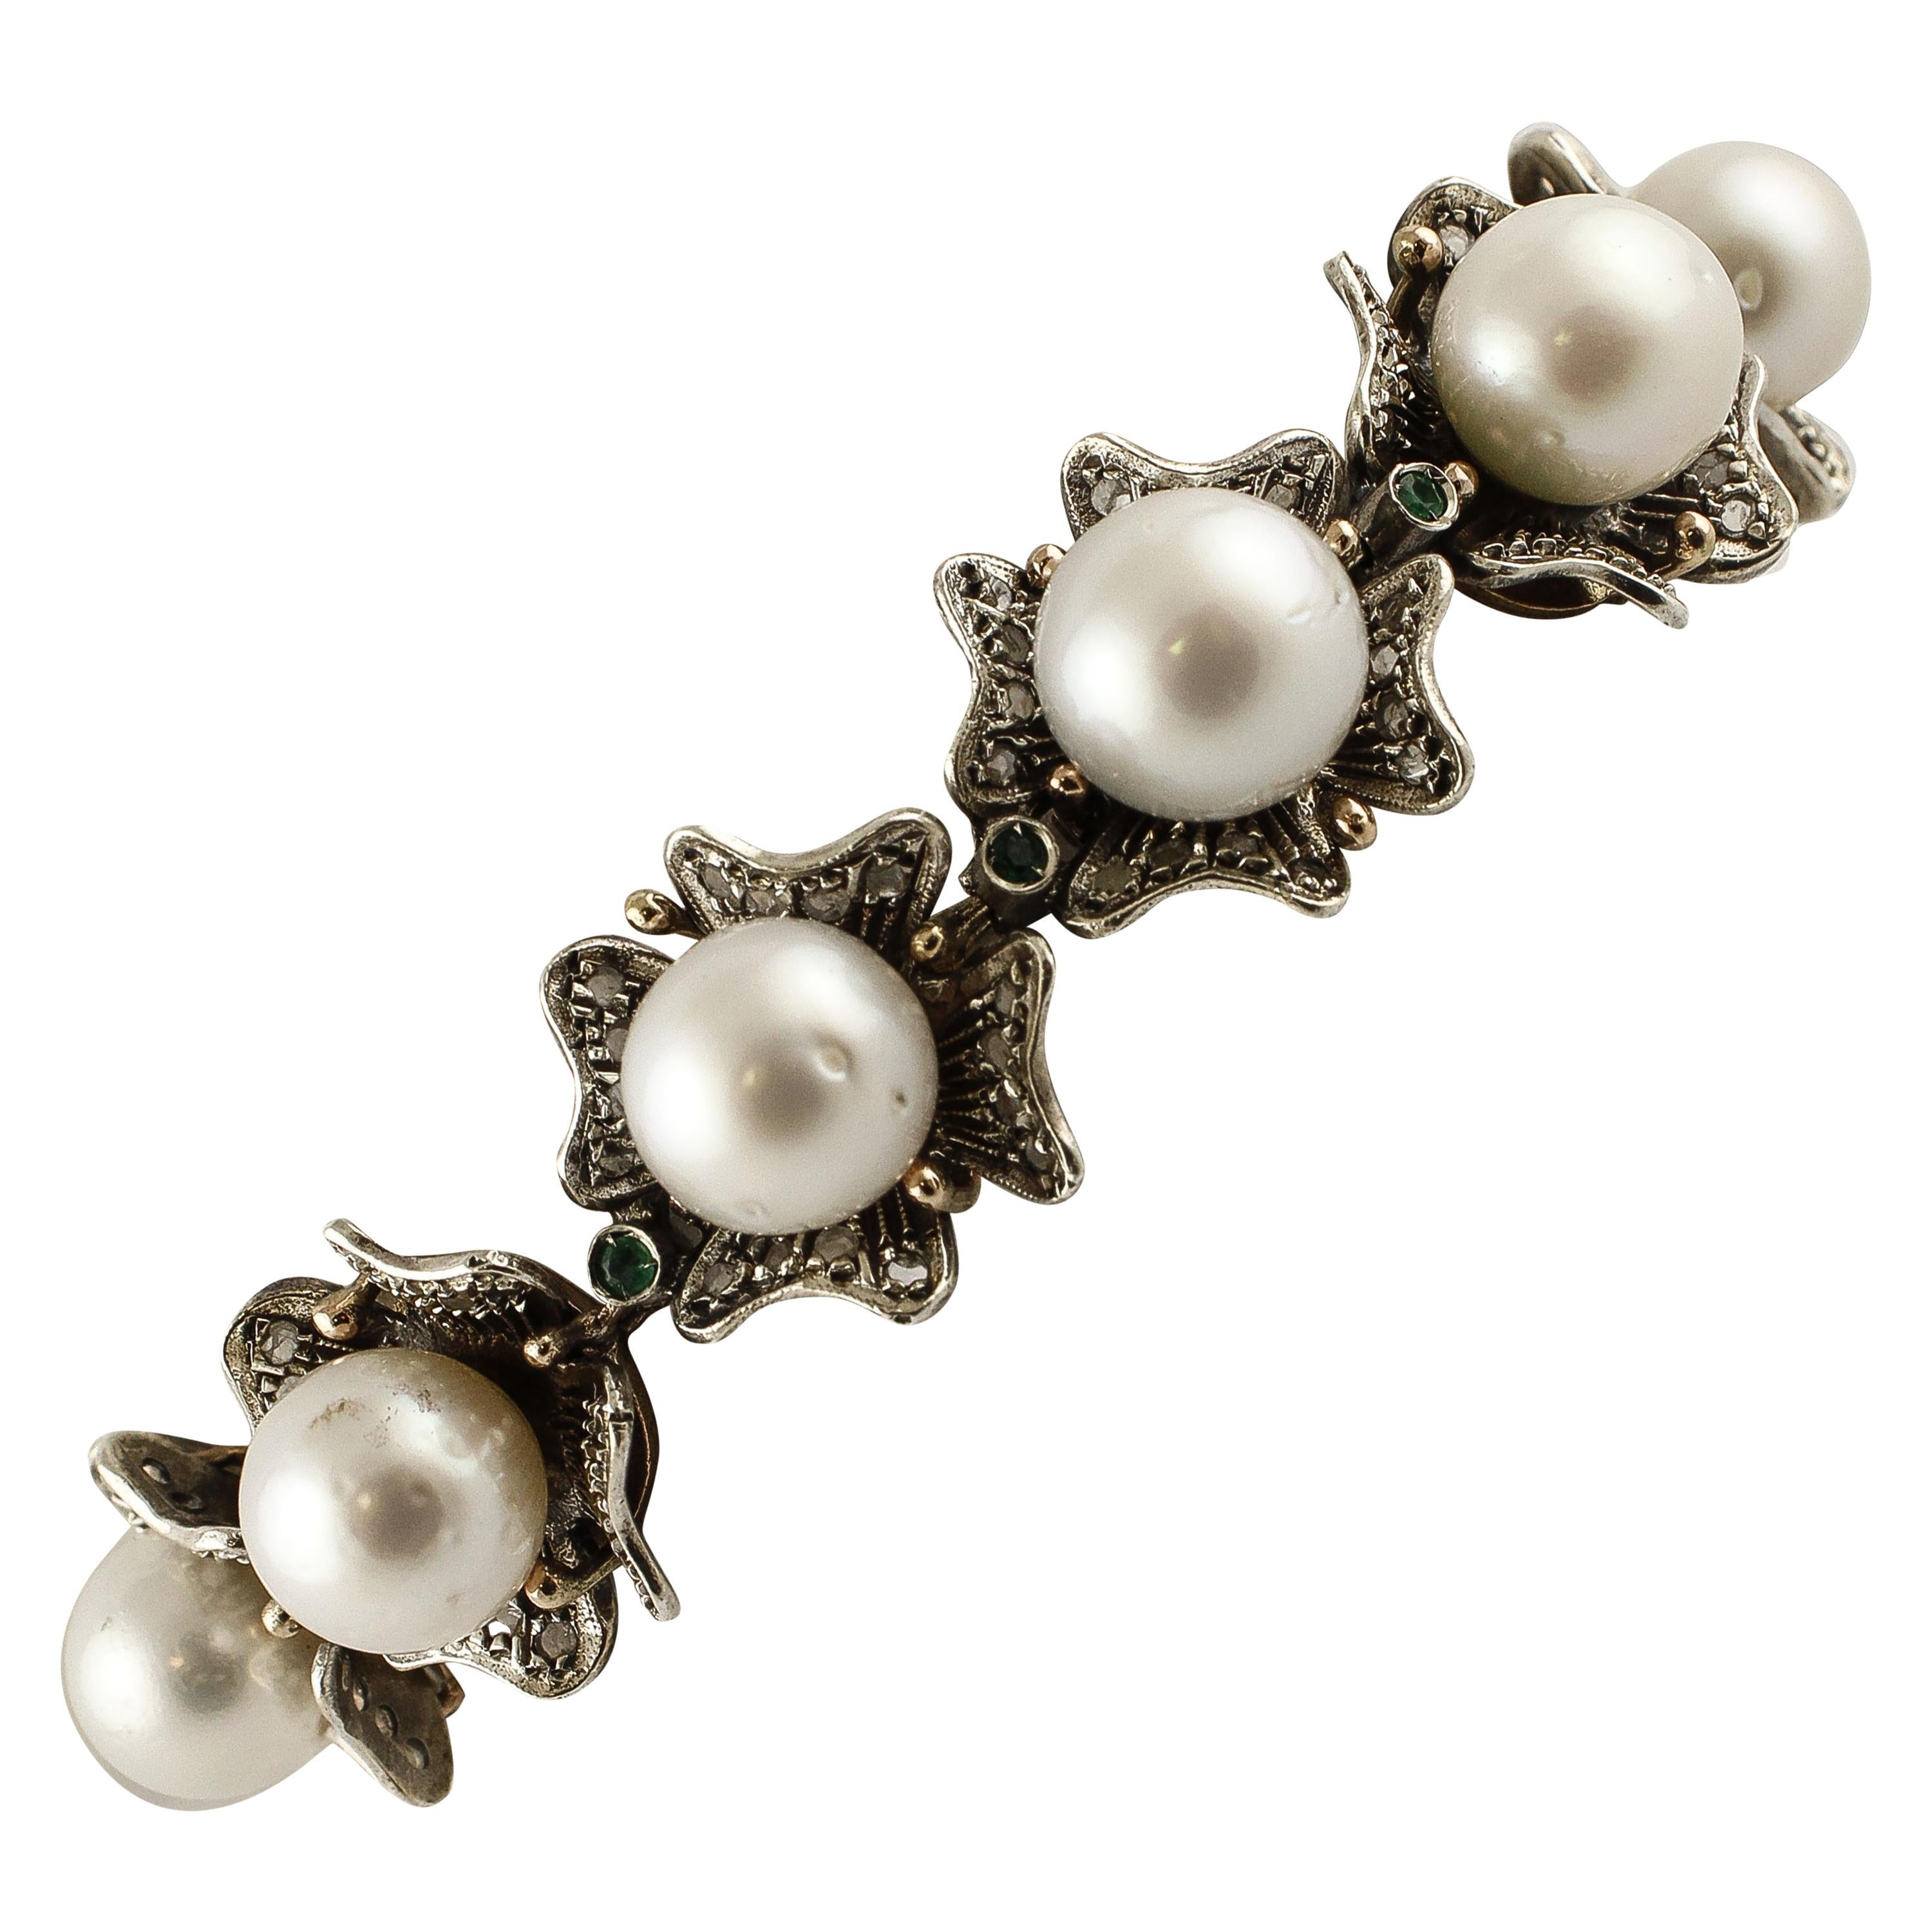 Armband aus Roségold und Silber mit Diamanten, Smaragden, Smaragden und australischen weißen Perlen im Rosenschliff